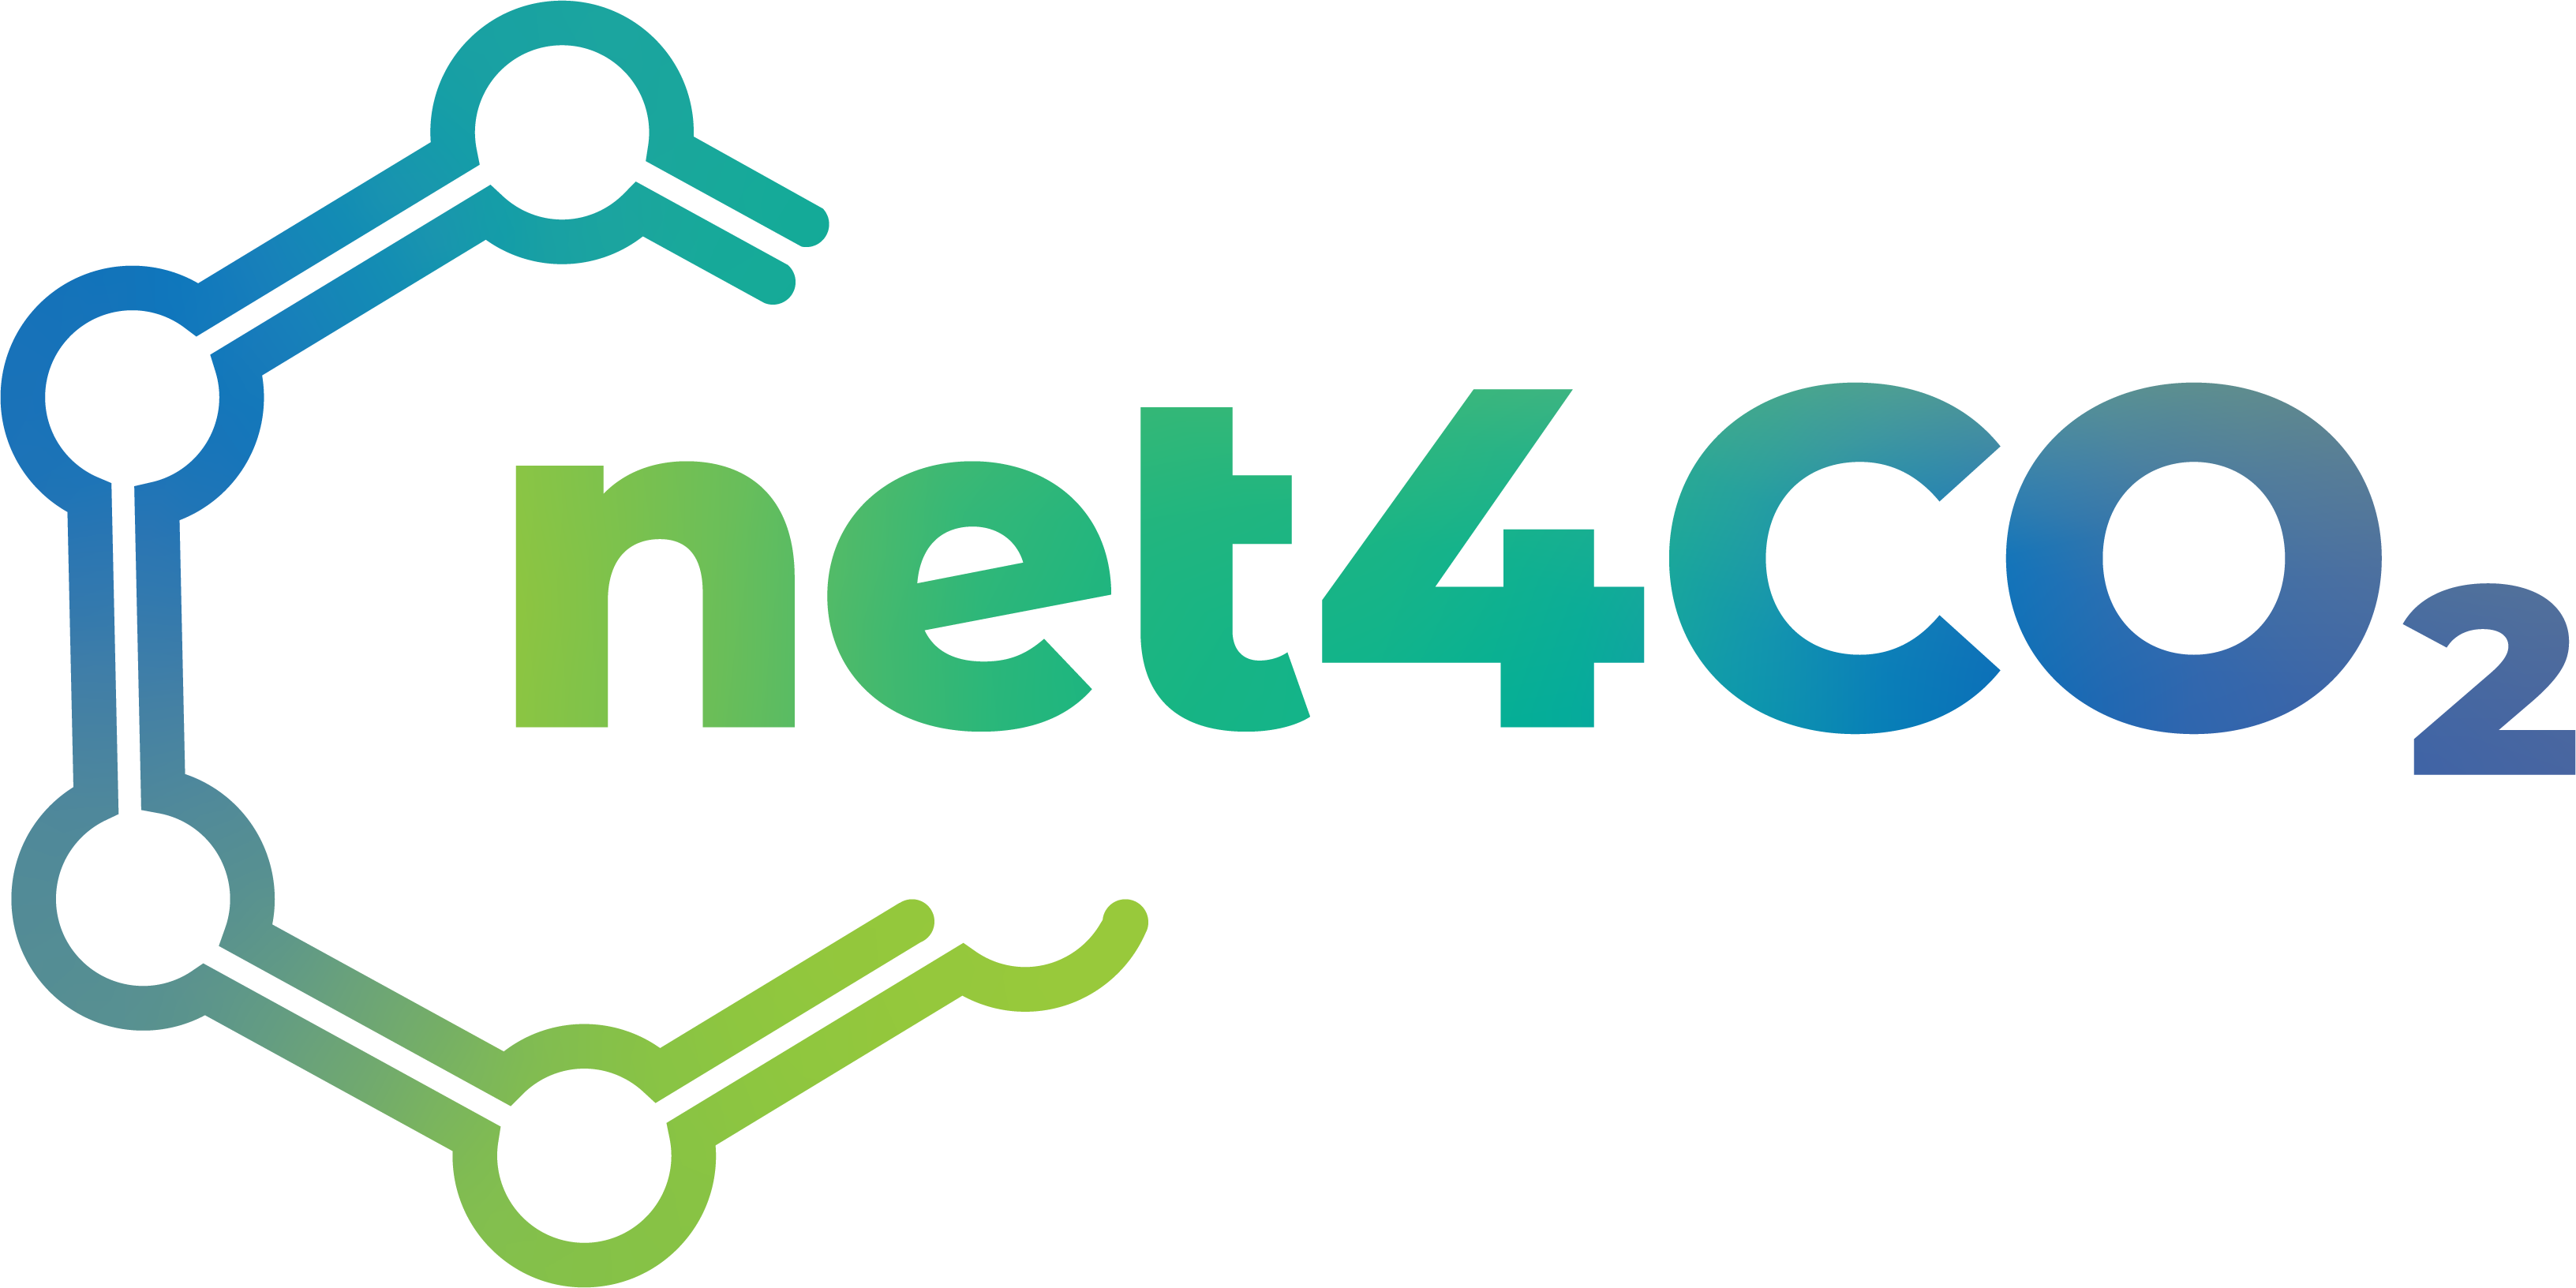 NET4CO2